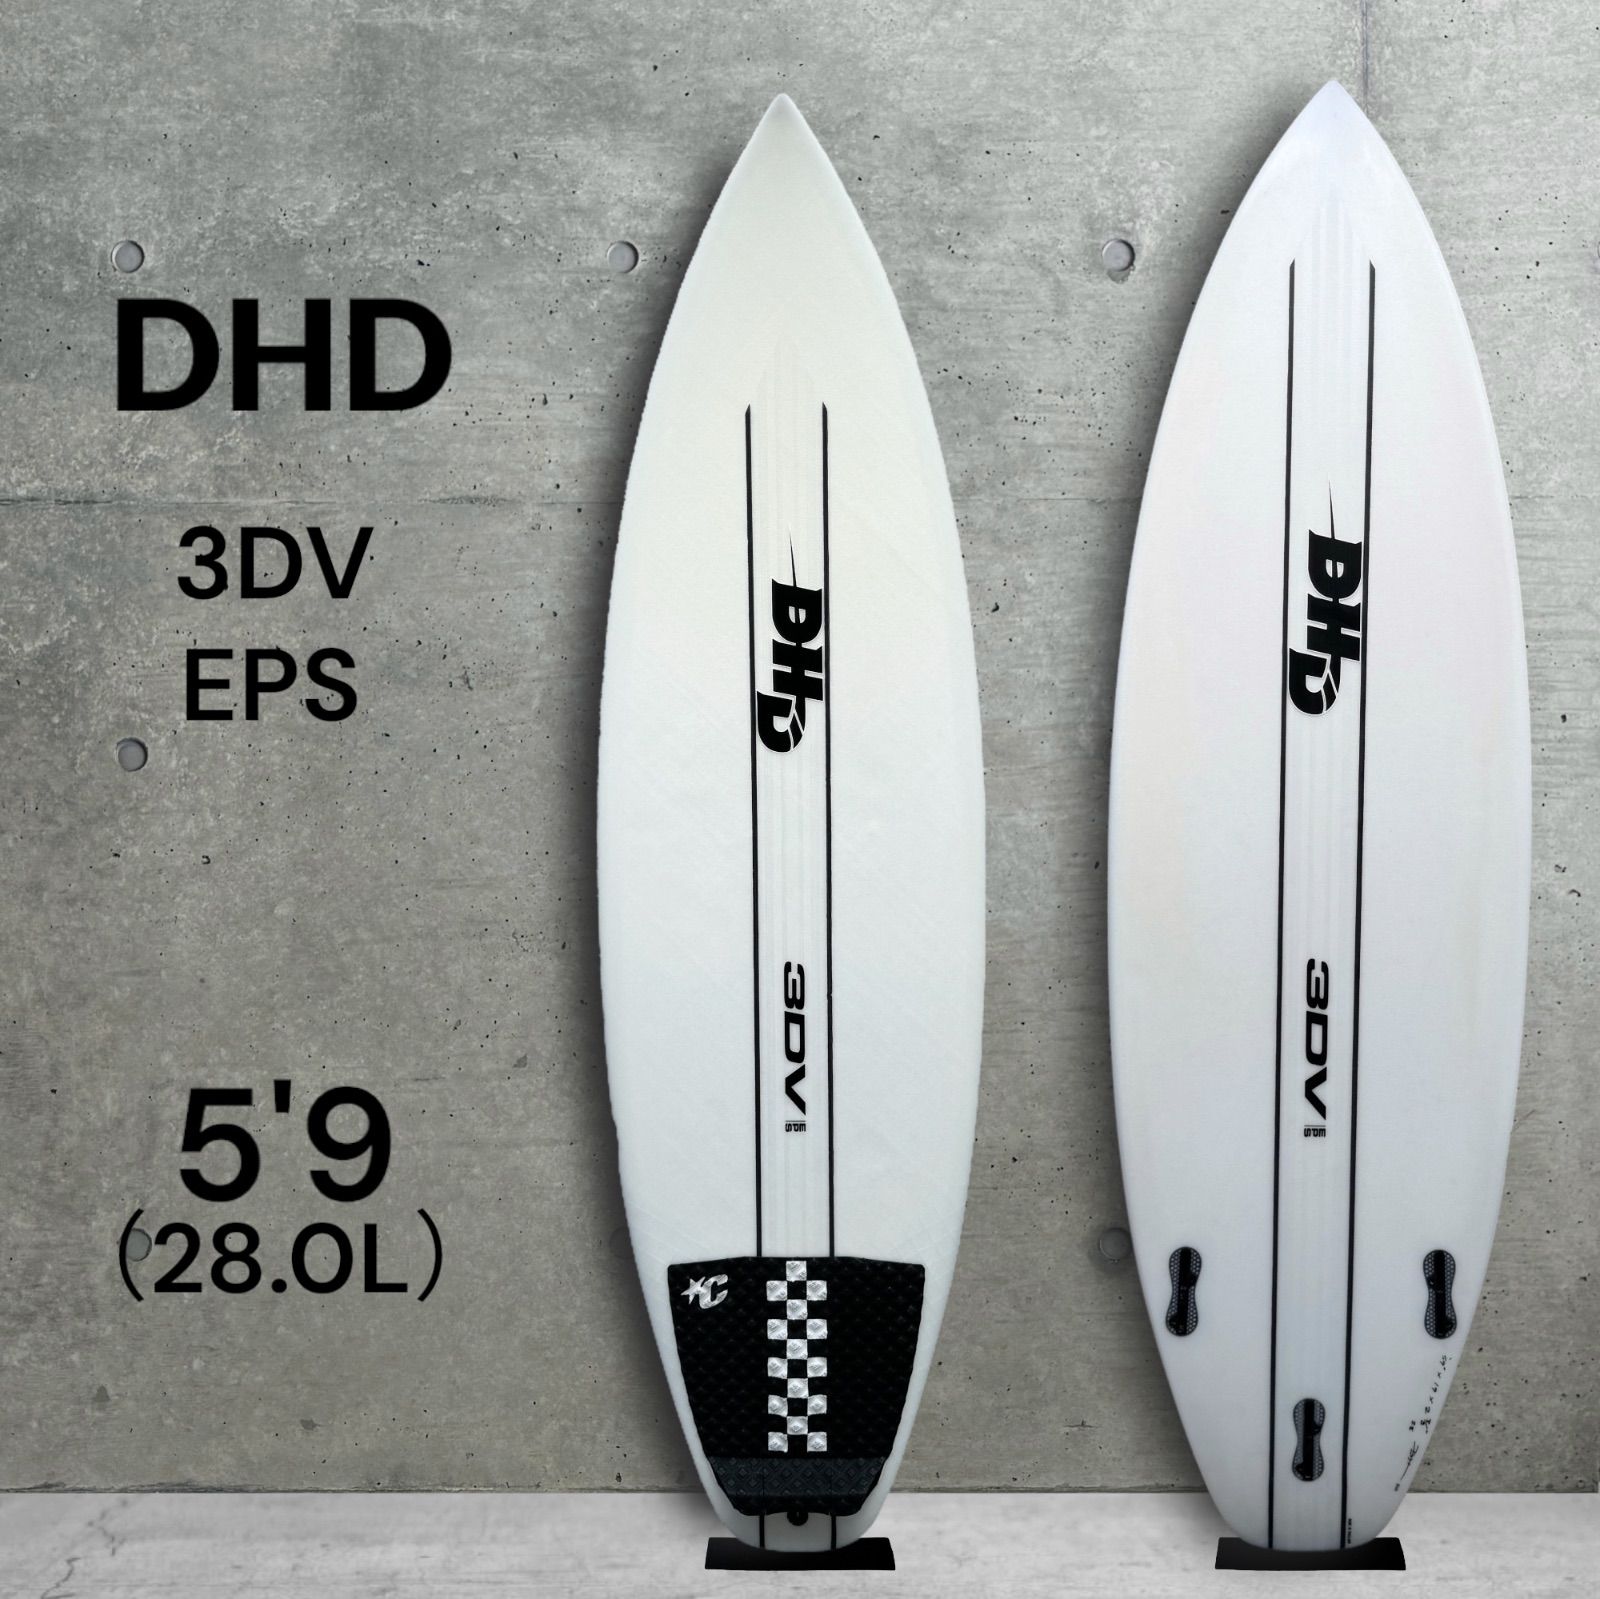 極美品 DHD ダレンハンドレー 3DV EPS 5'9 サーフボード 28.0L 